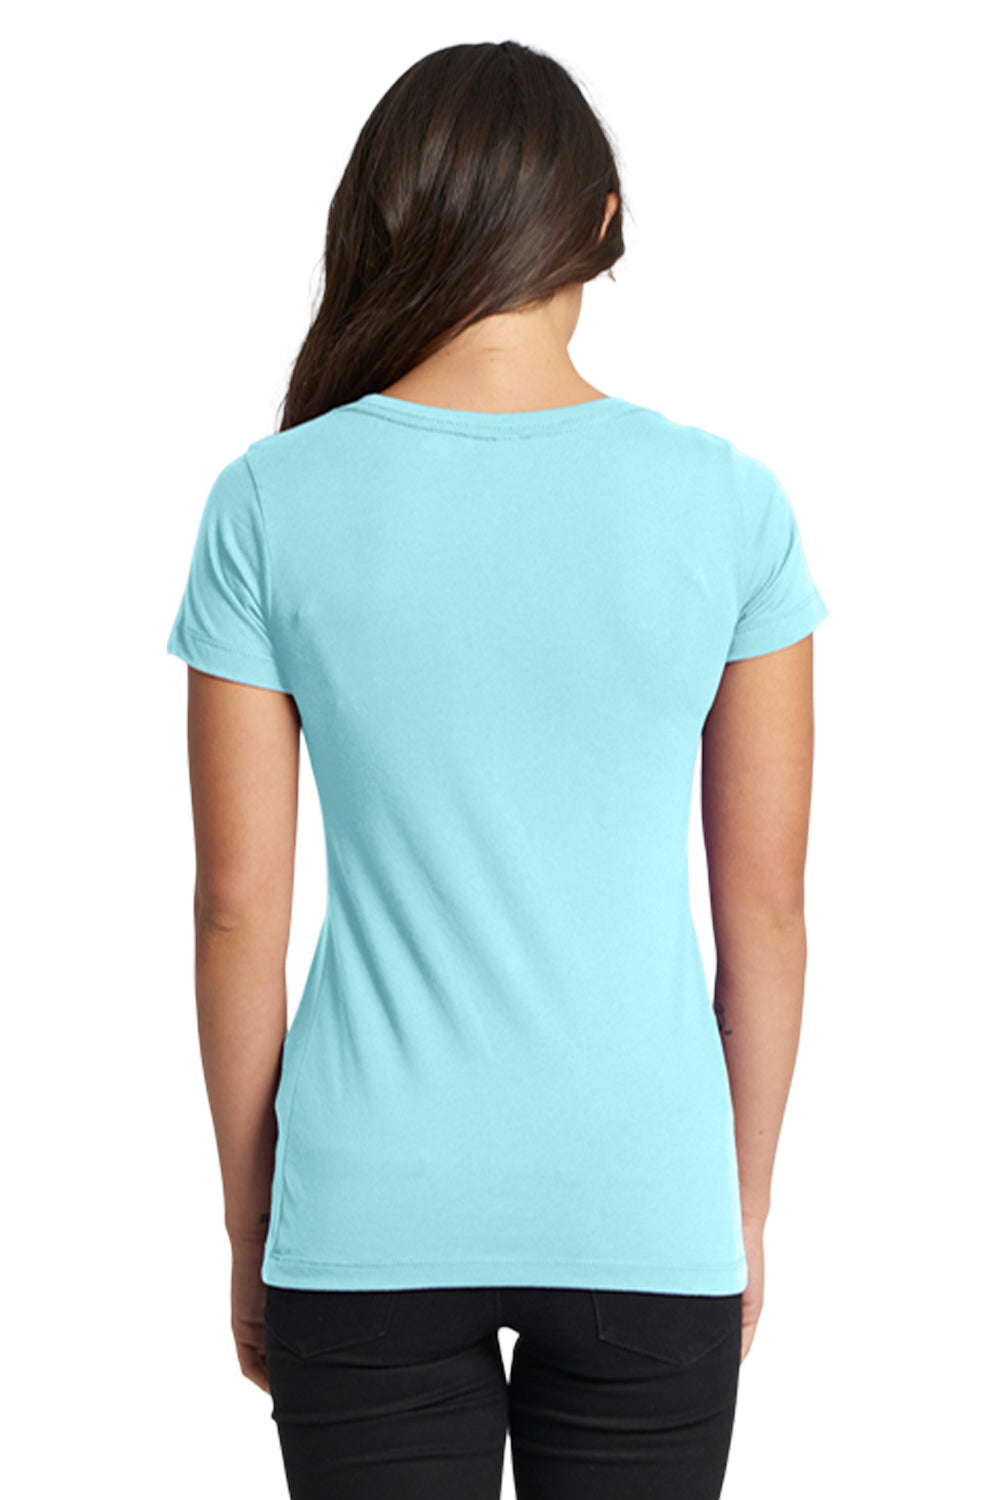 Next Level N1510 Womens Ideal Jersey Short Sleeve Crewneck T-Shirt Cancun Blue Back